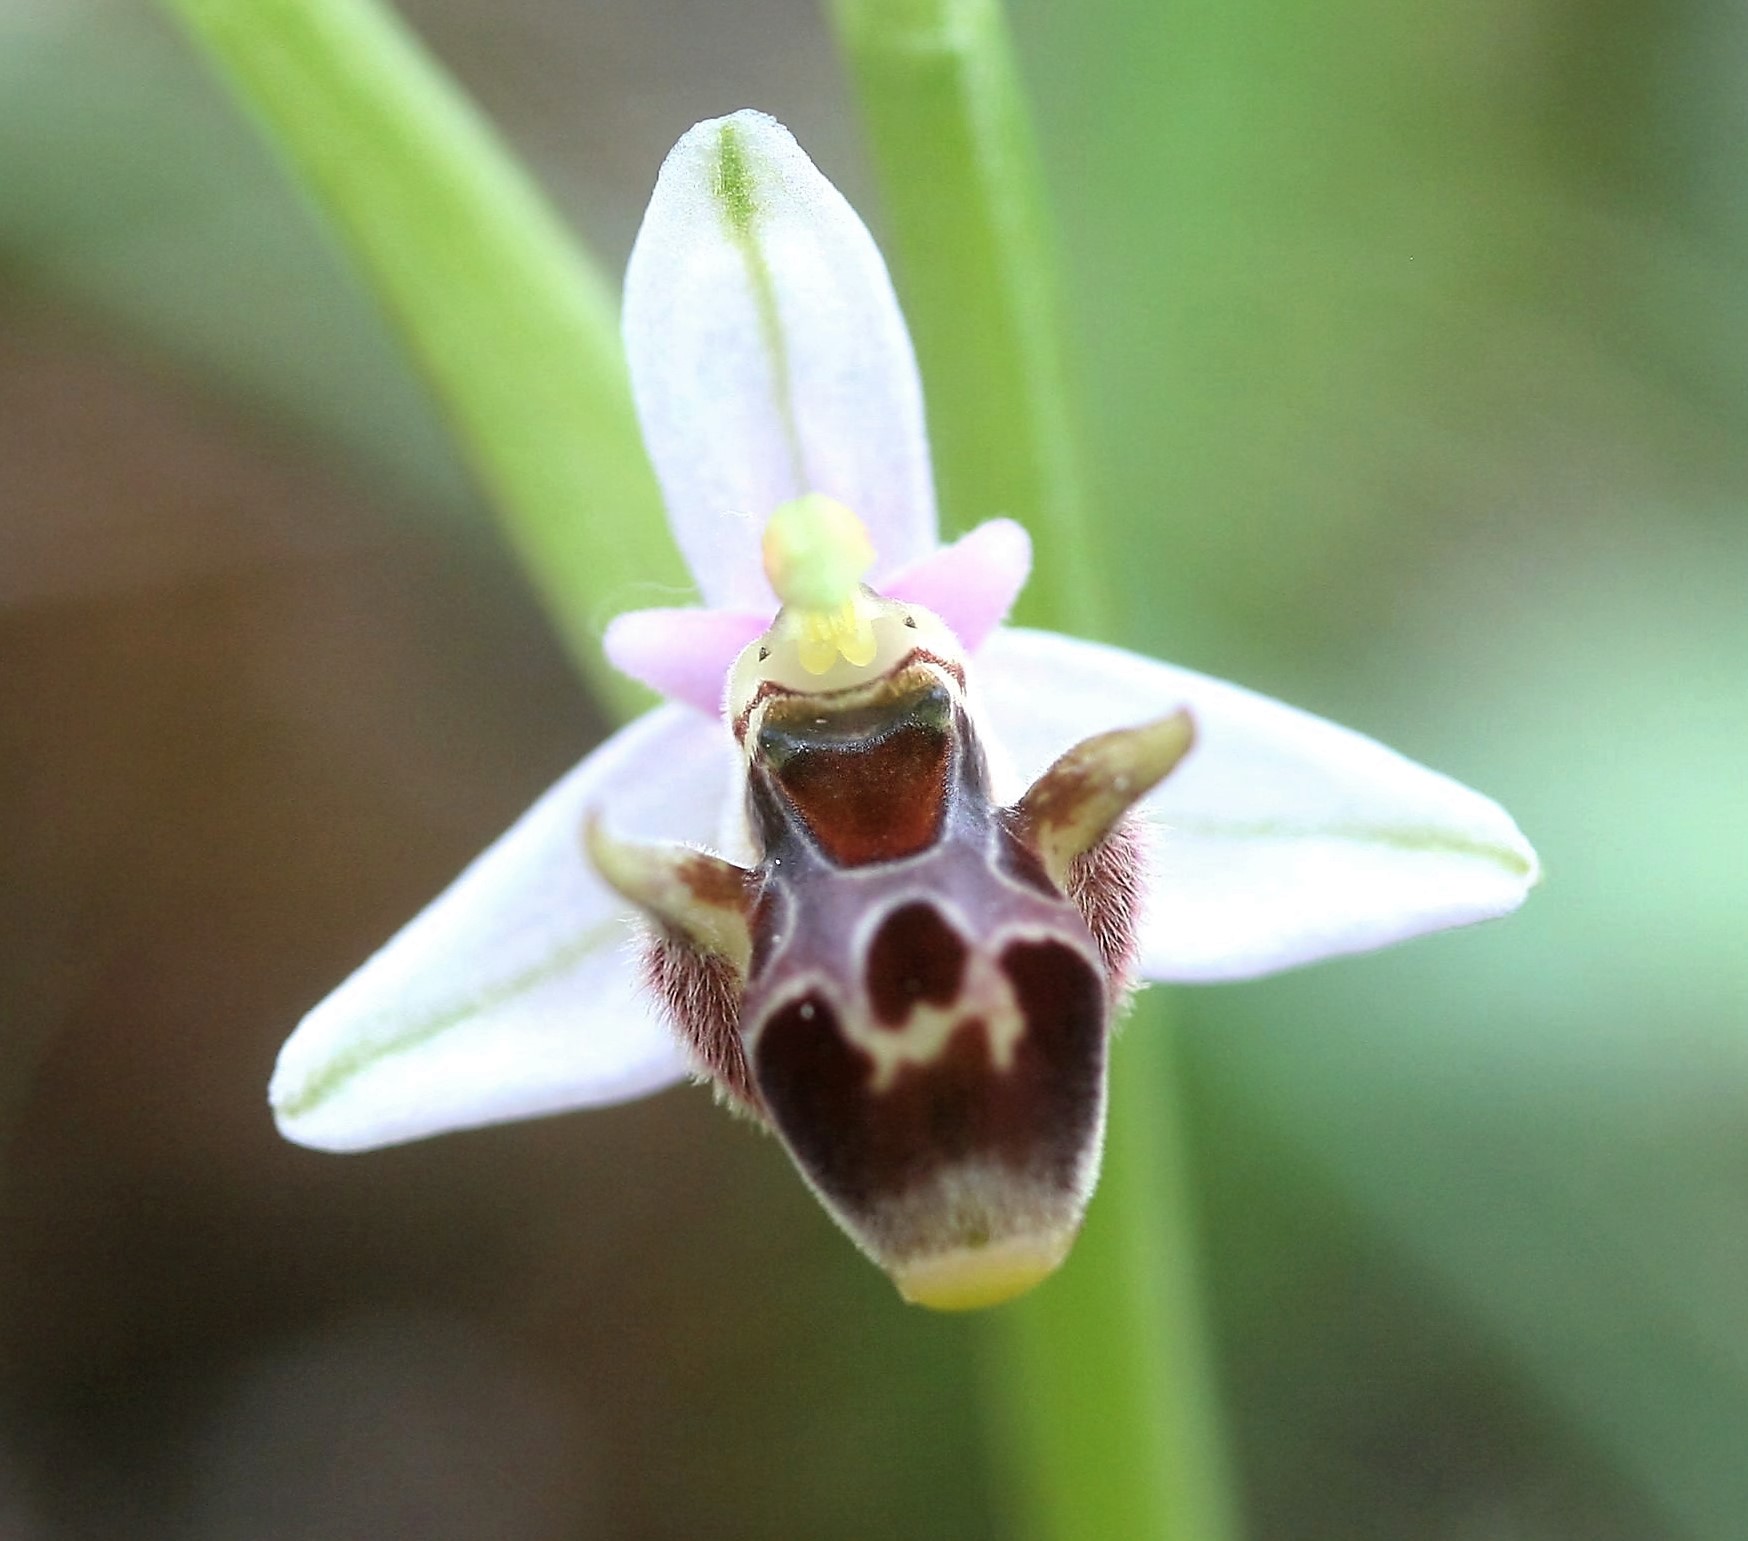 Ophrys attica var alba